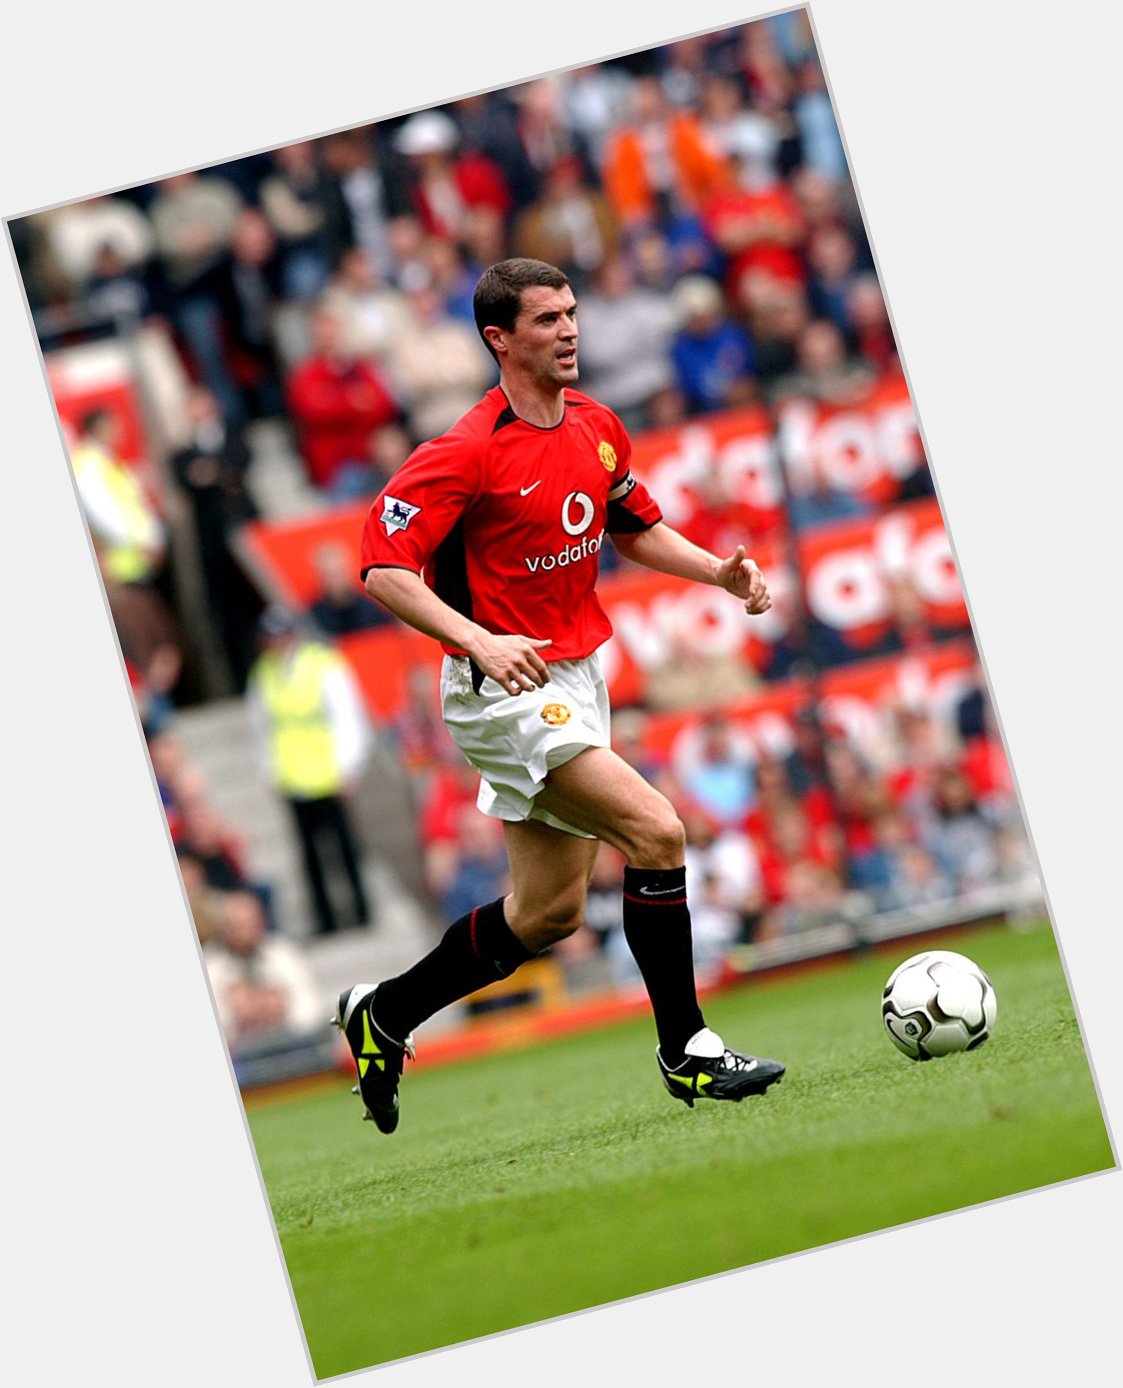 Happy birthday to Manchester United legend, Roy Keane! 